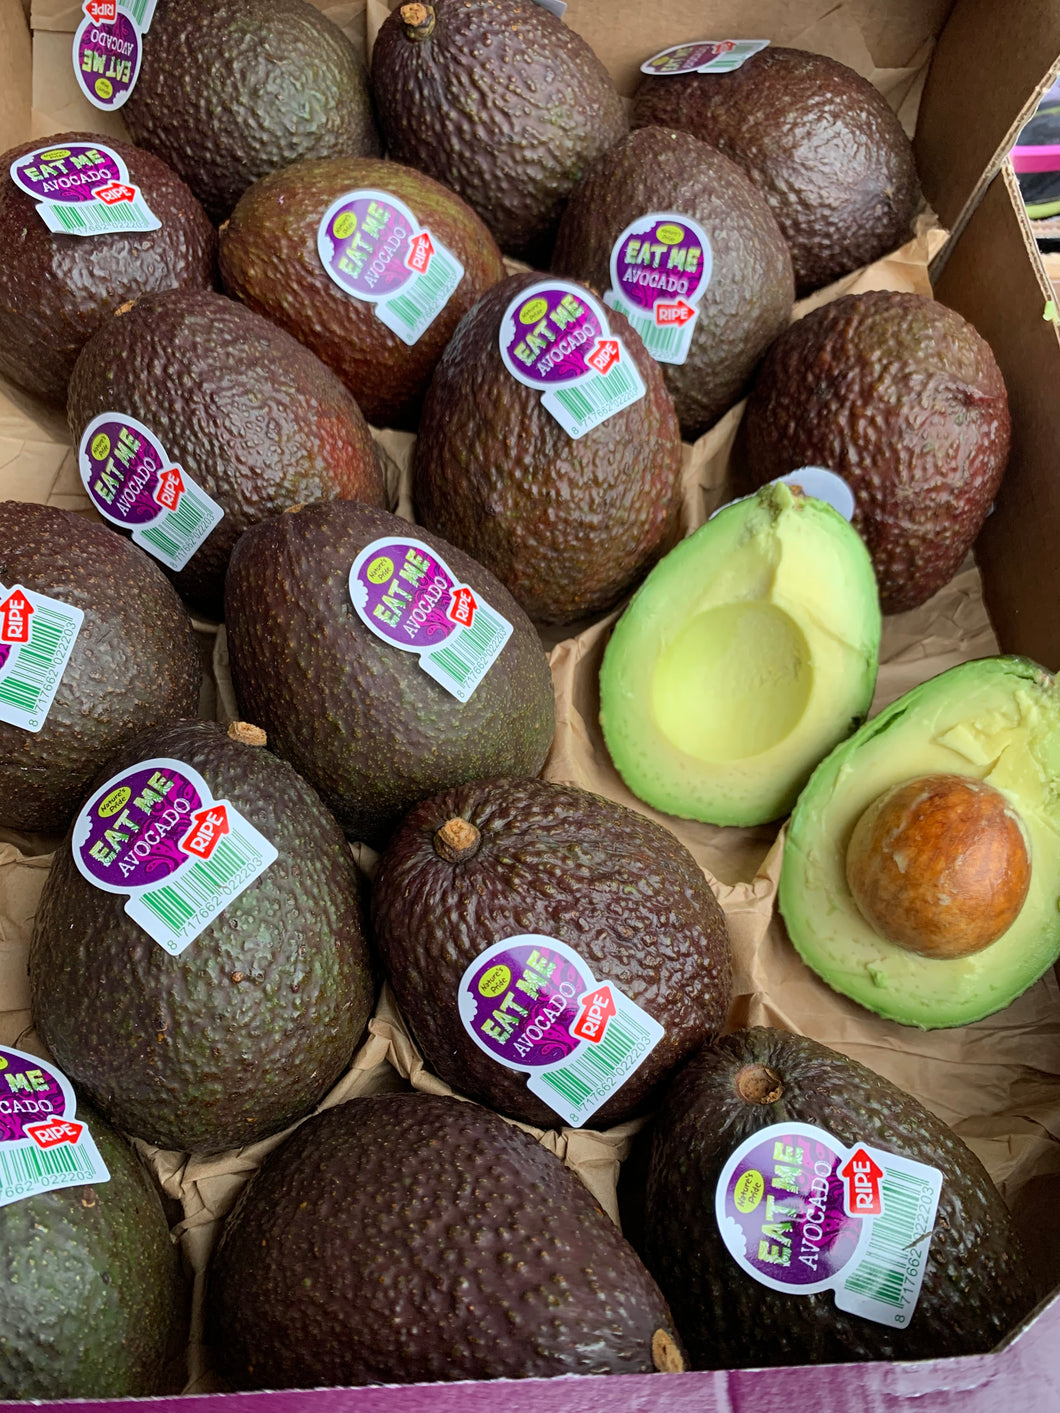 Hass avocado - Each